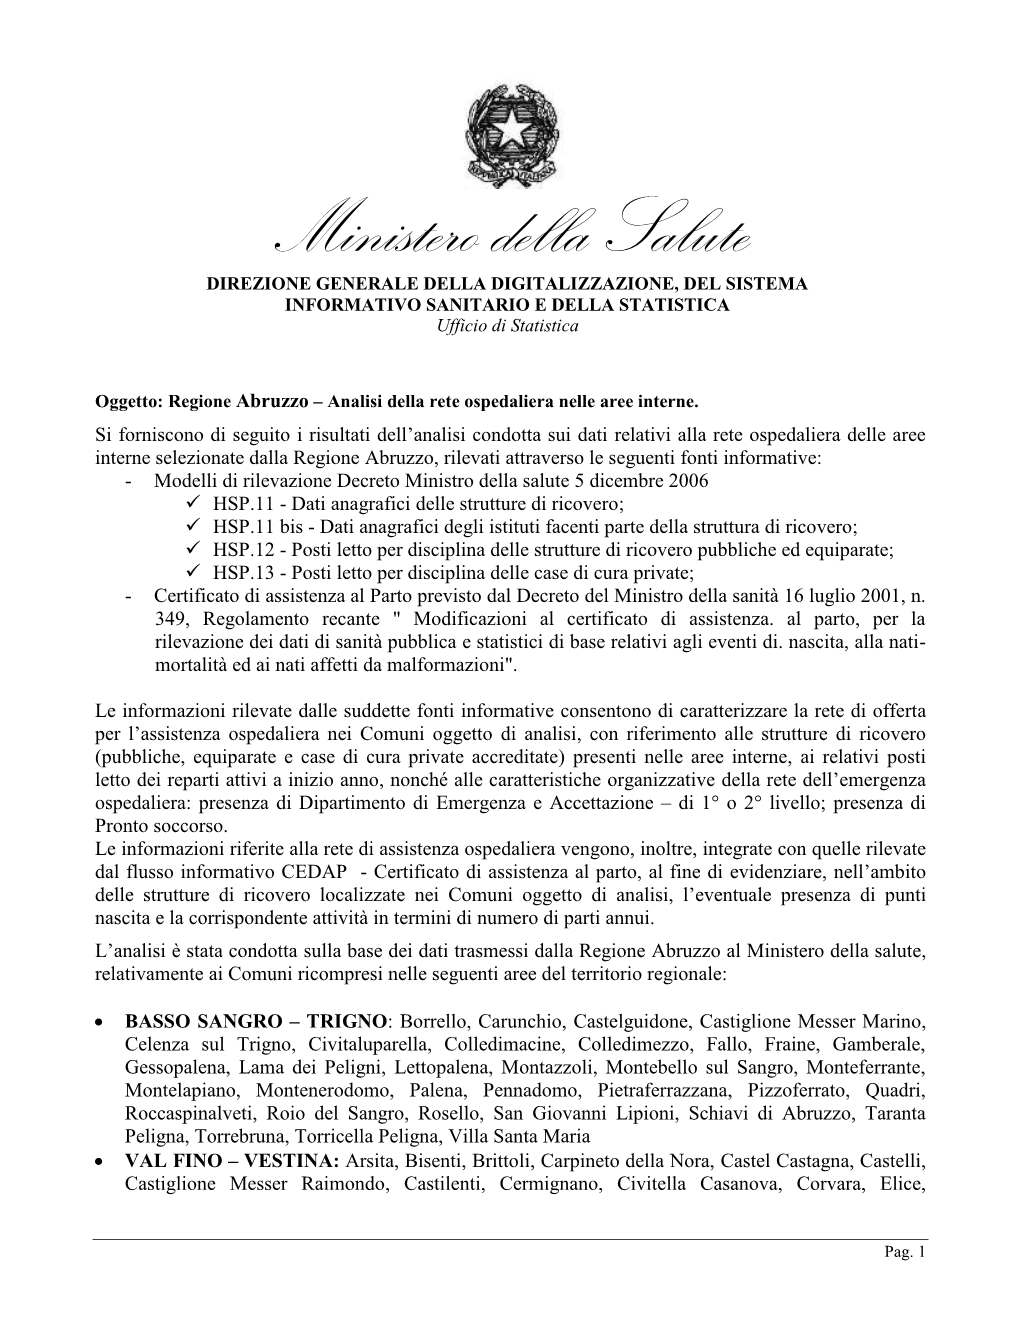 Ministero Della Salute, Regione Abruzzo Analisi Della Rete